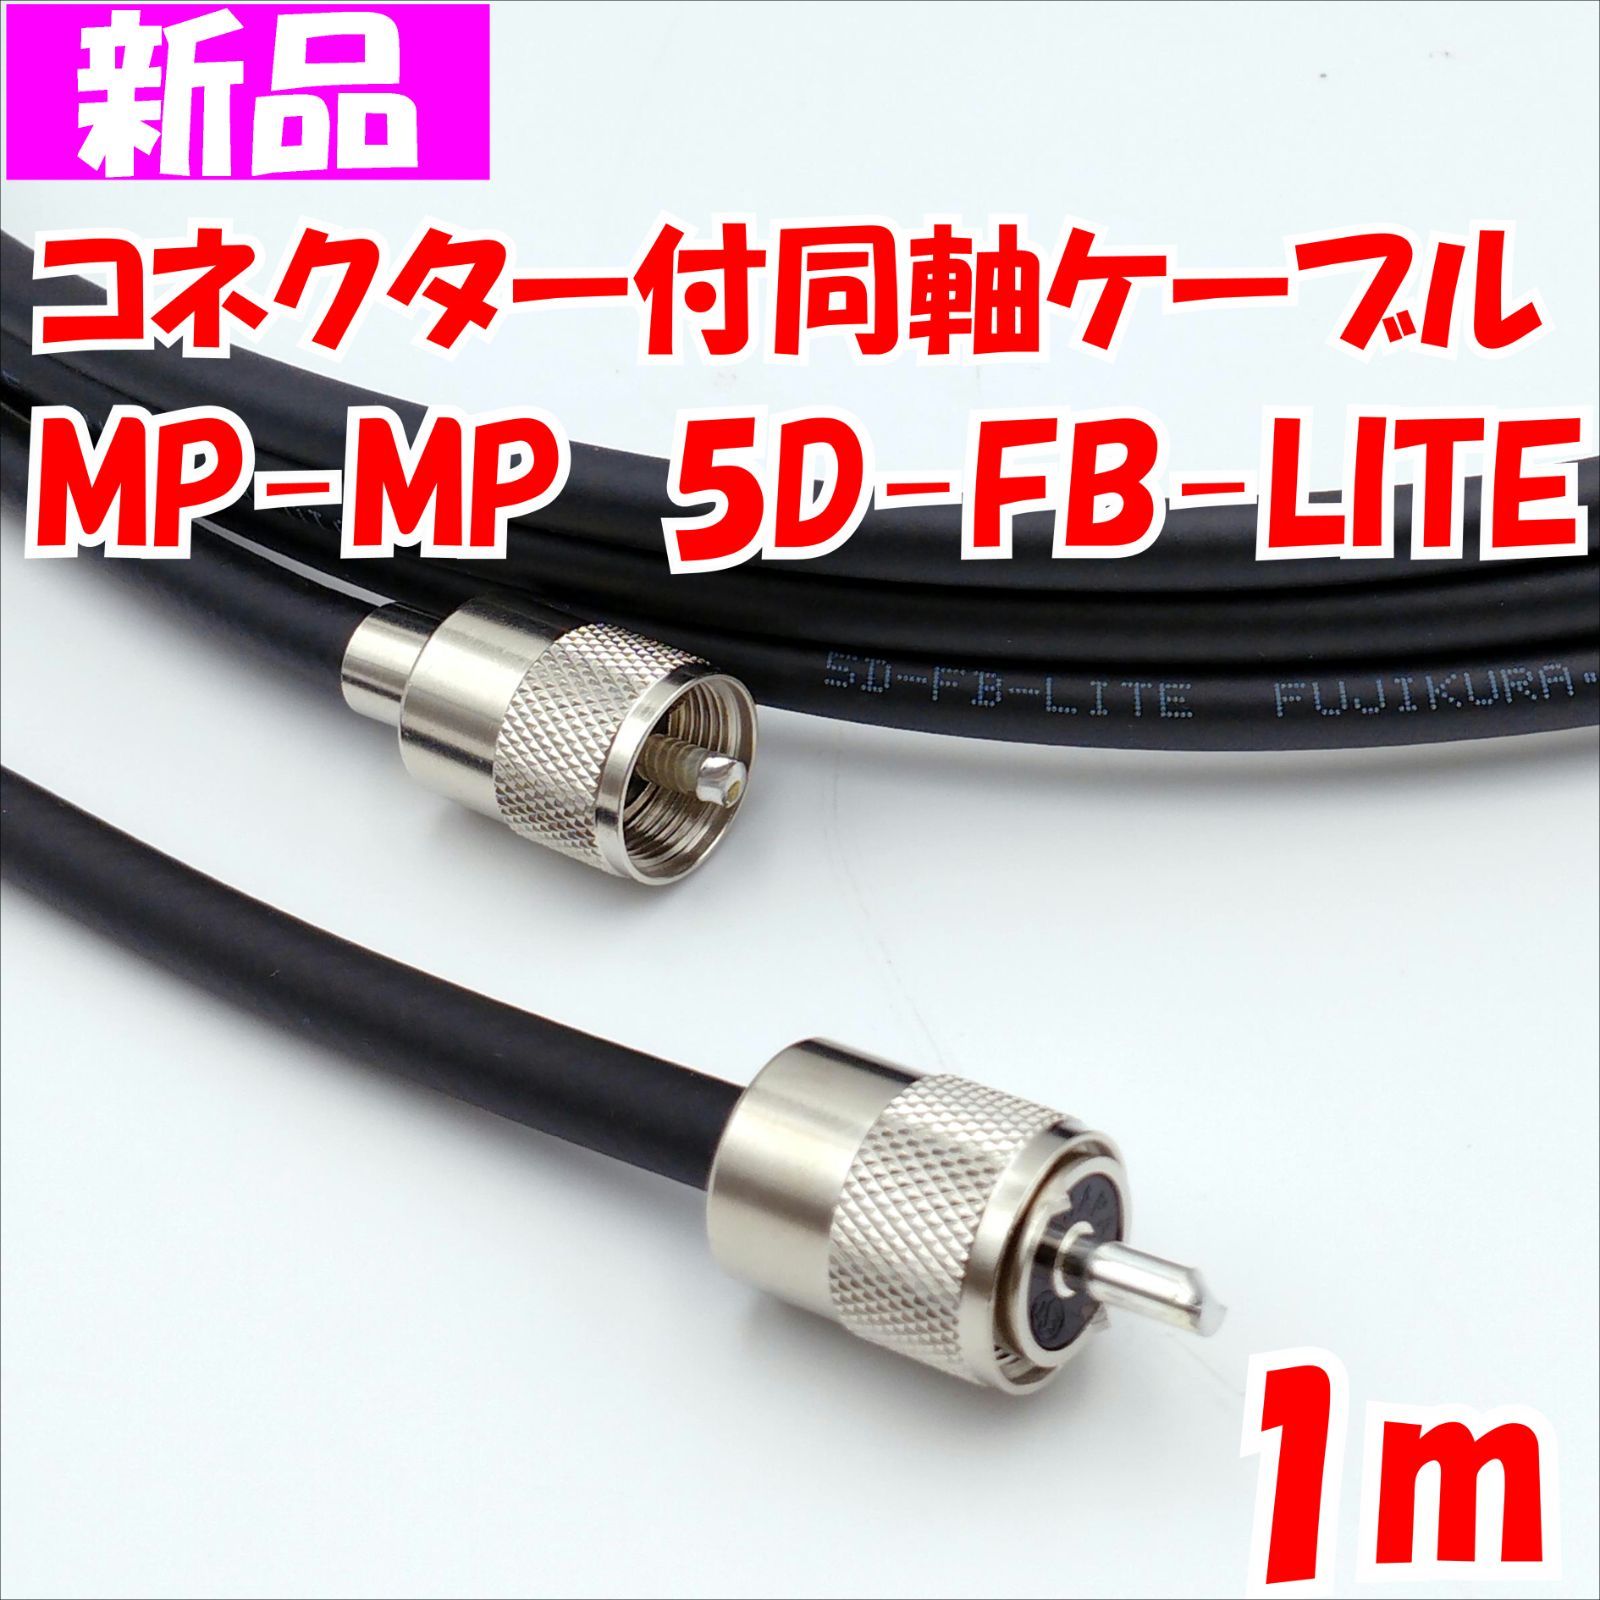 同軸ケーブル MP-MP - アマチュア無線